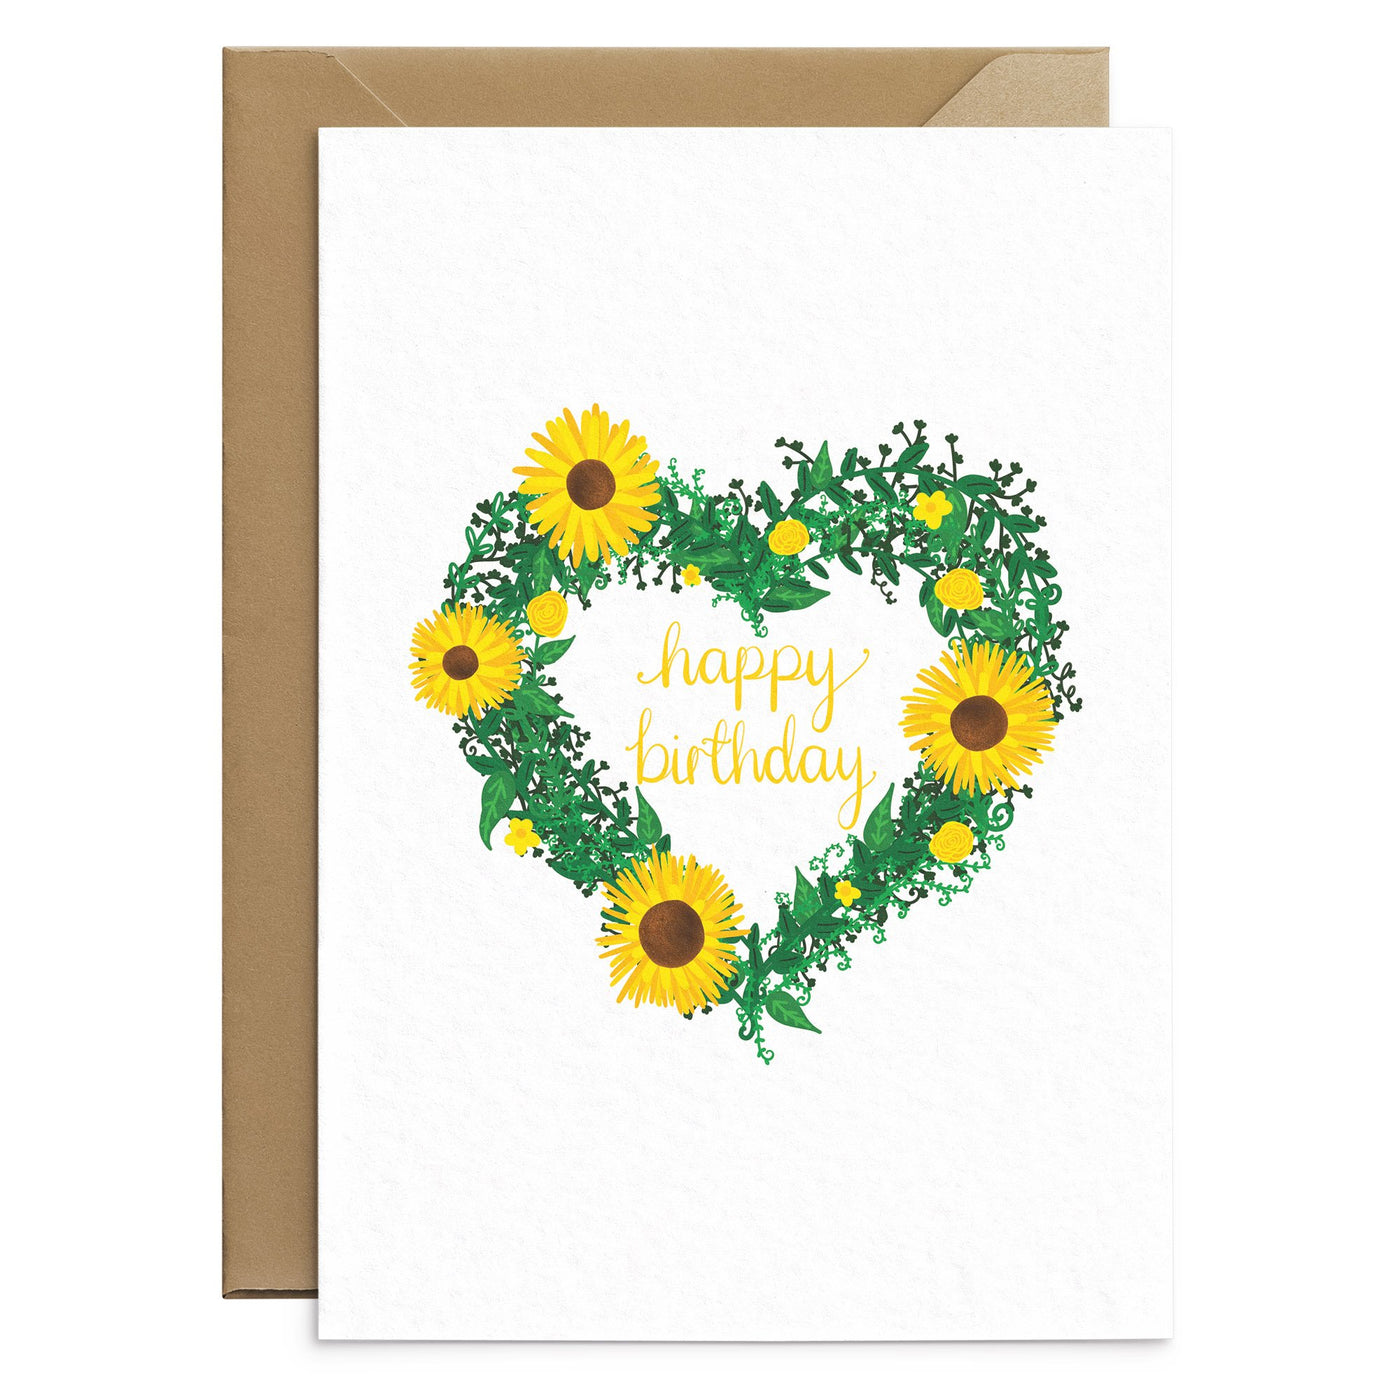 Sunflower Birthday Card - Poppins & Co.